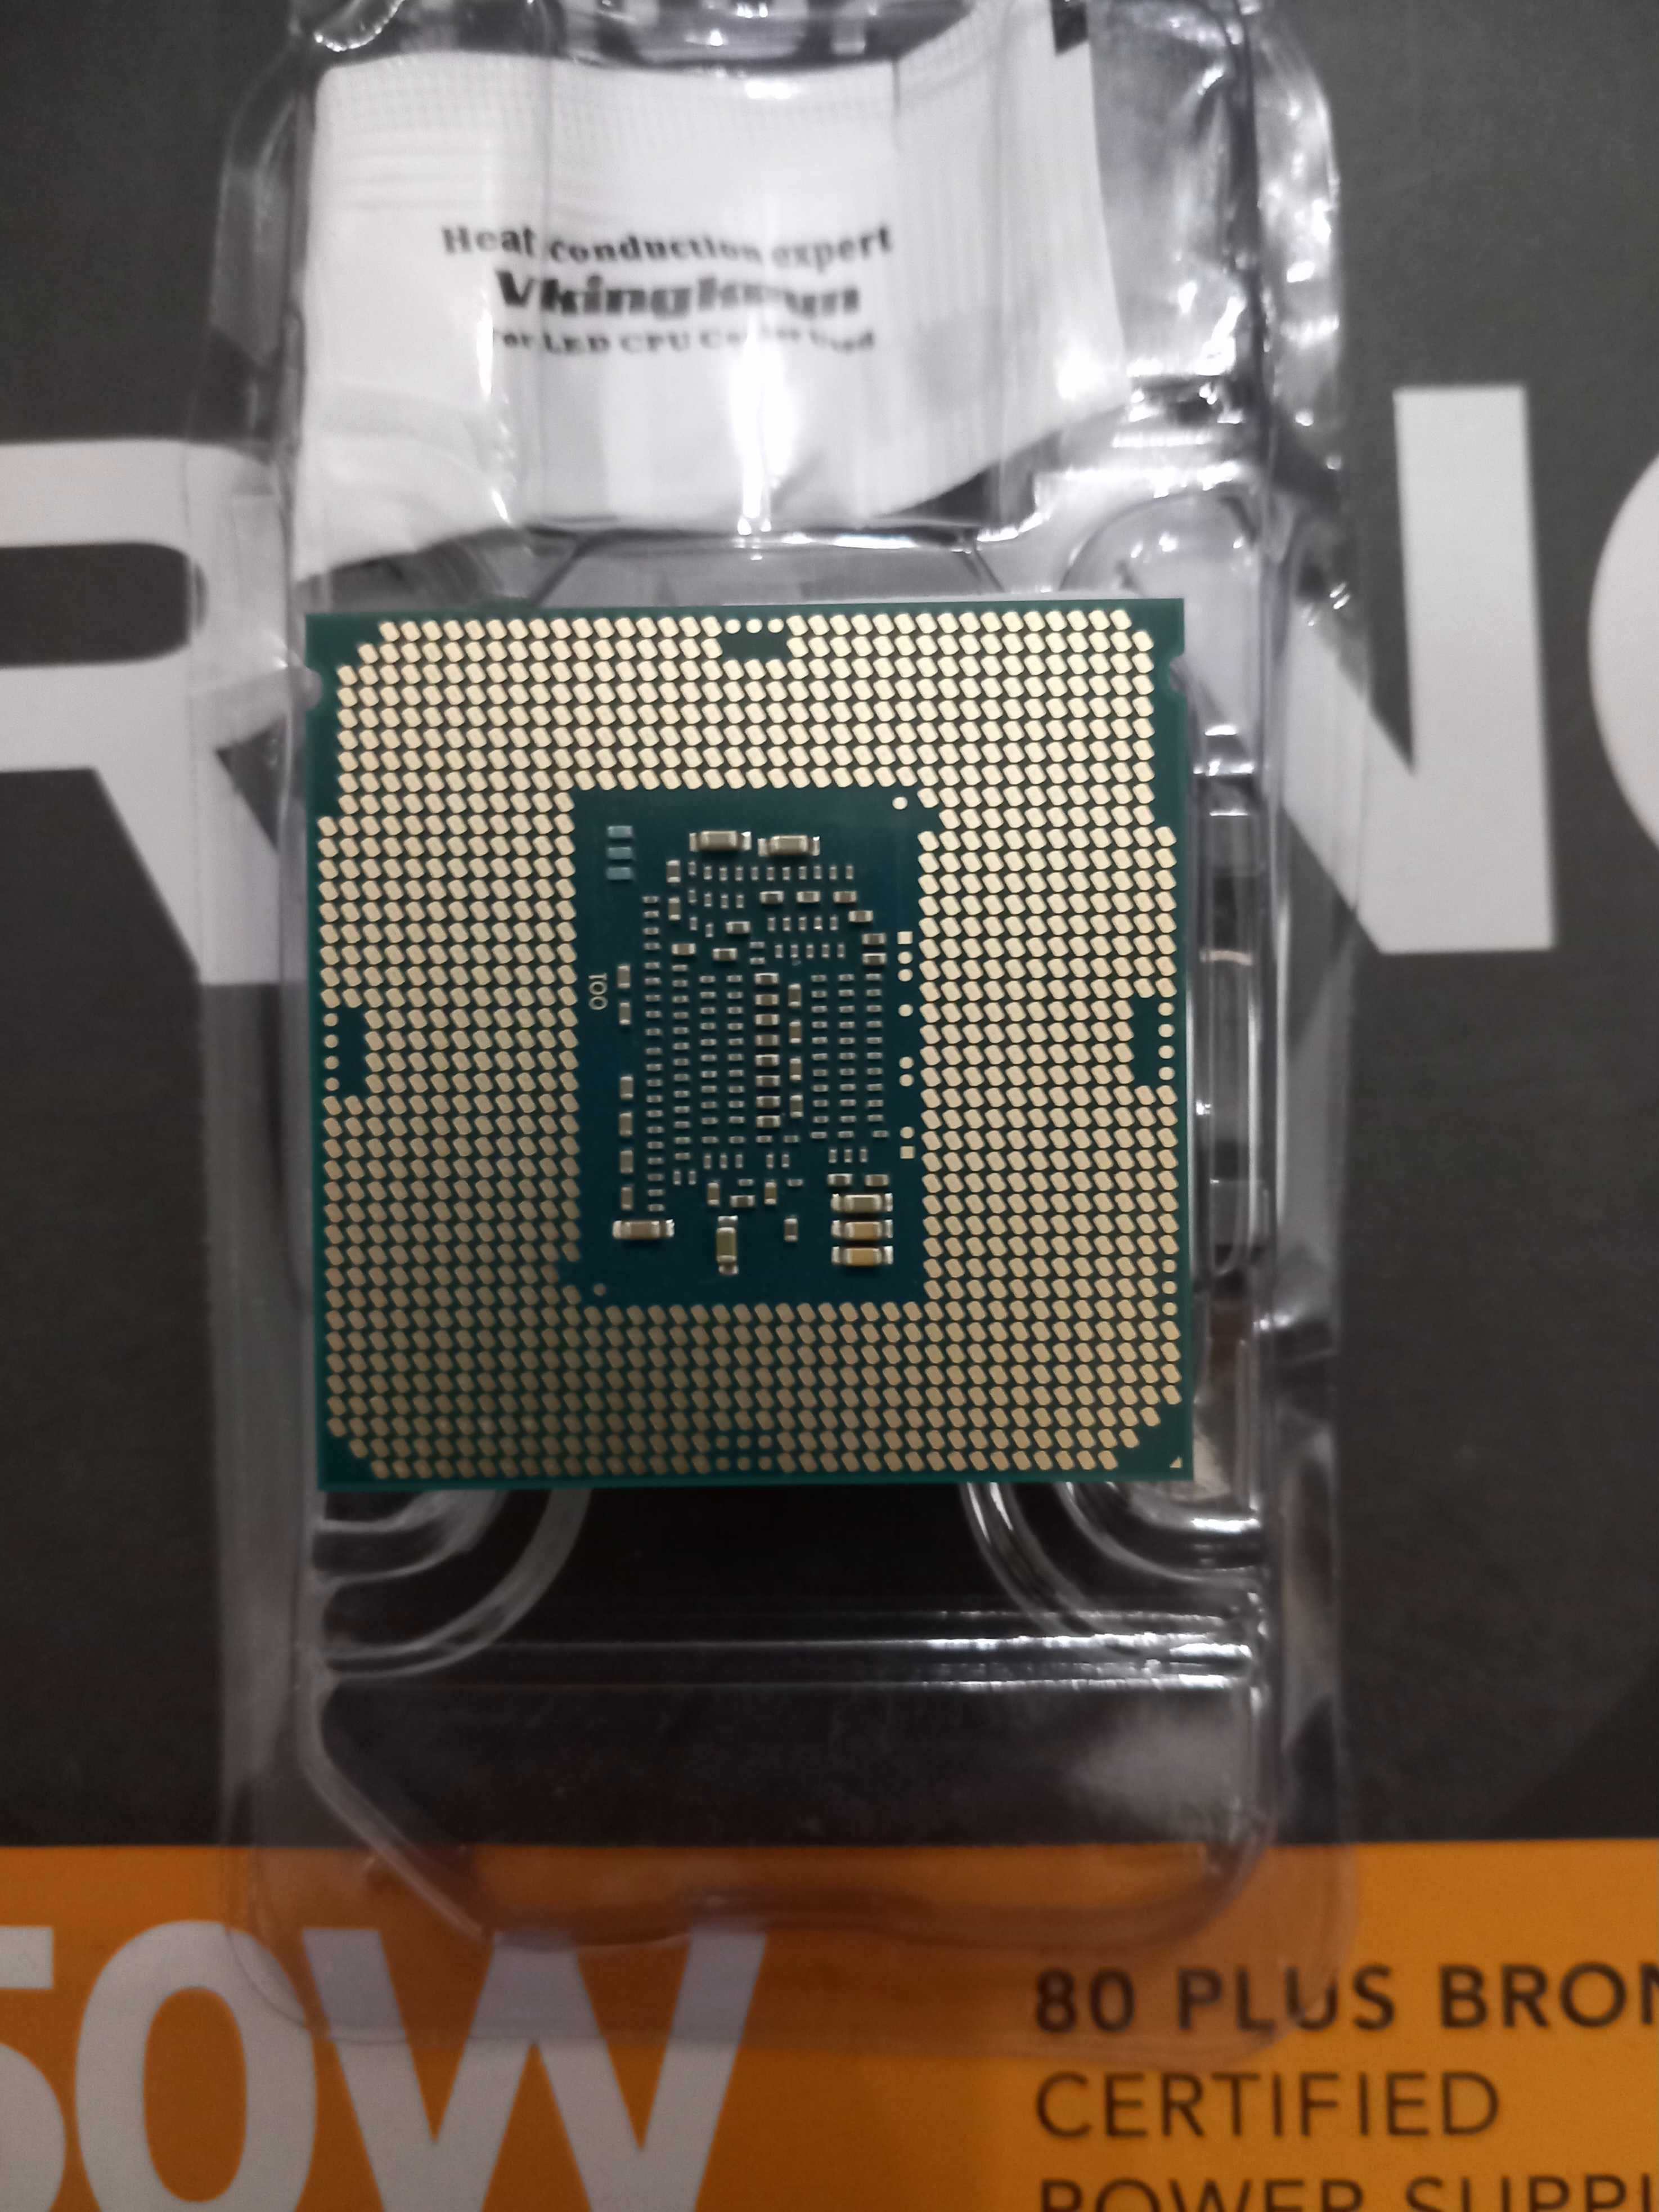 Processador Intel Pentium G4400 LGA1151 CPU / PC